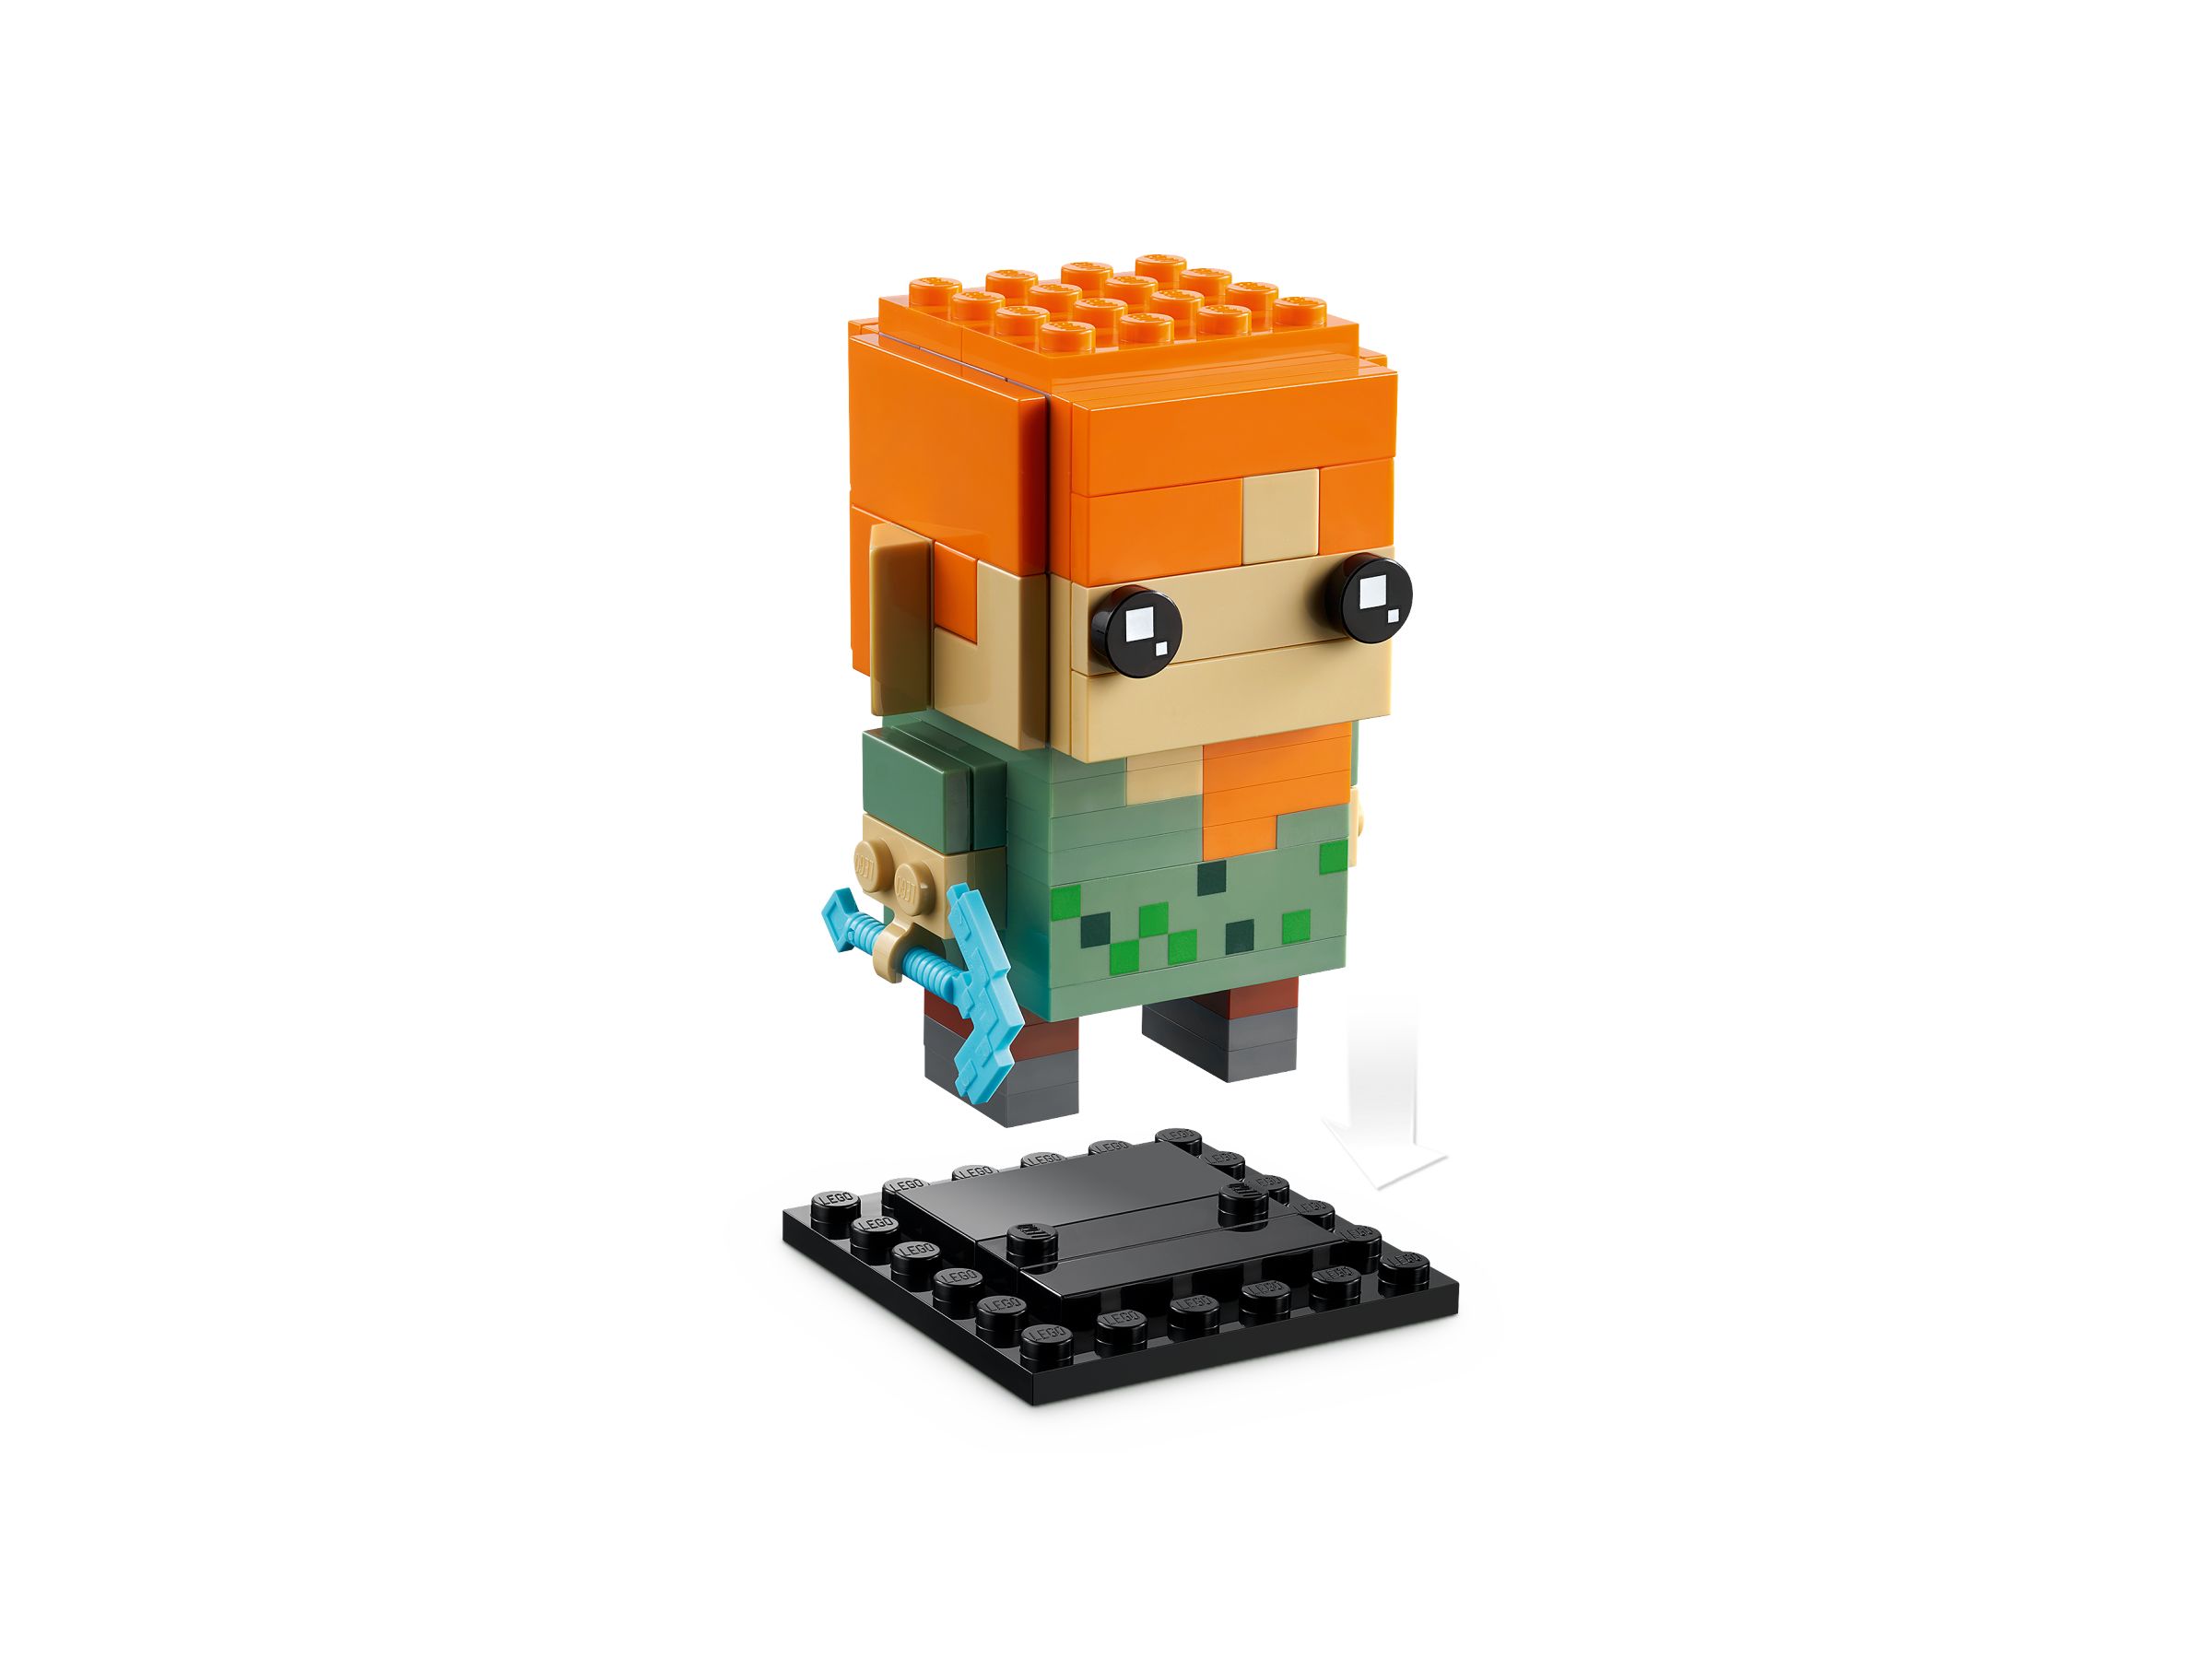 LEGO BrickHeadz 40624 Alex LEGO_40624_alt3.jpg